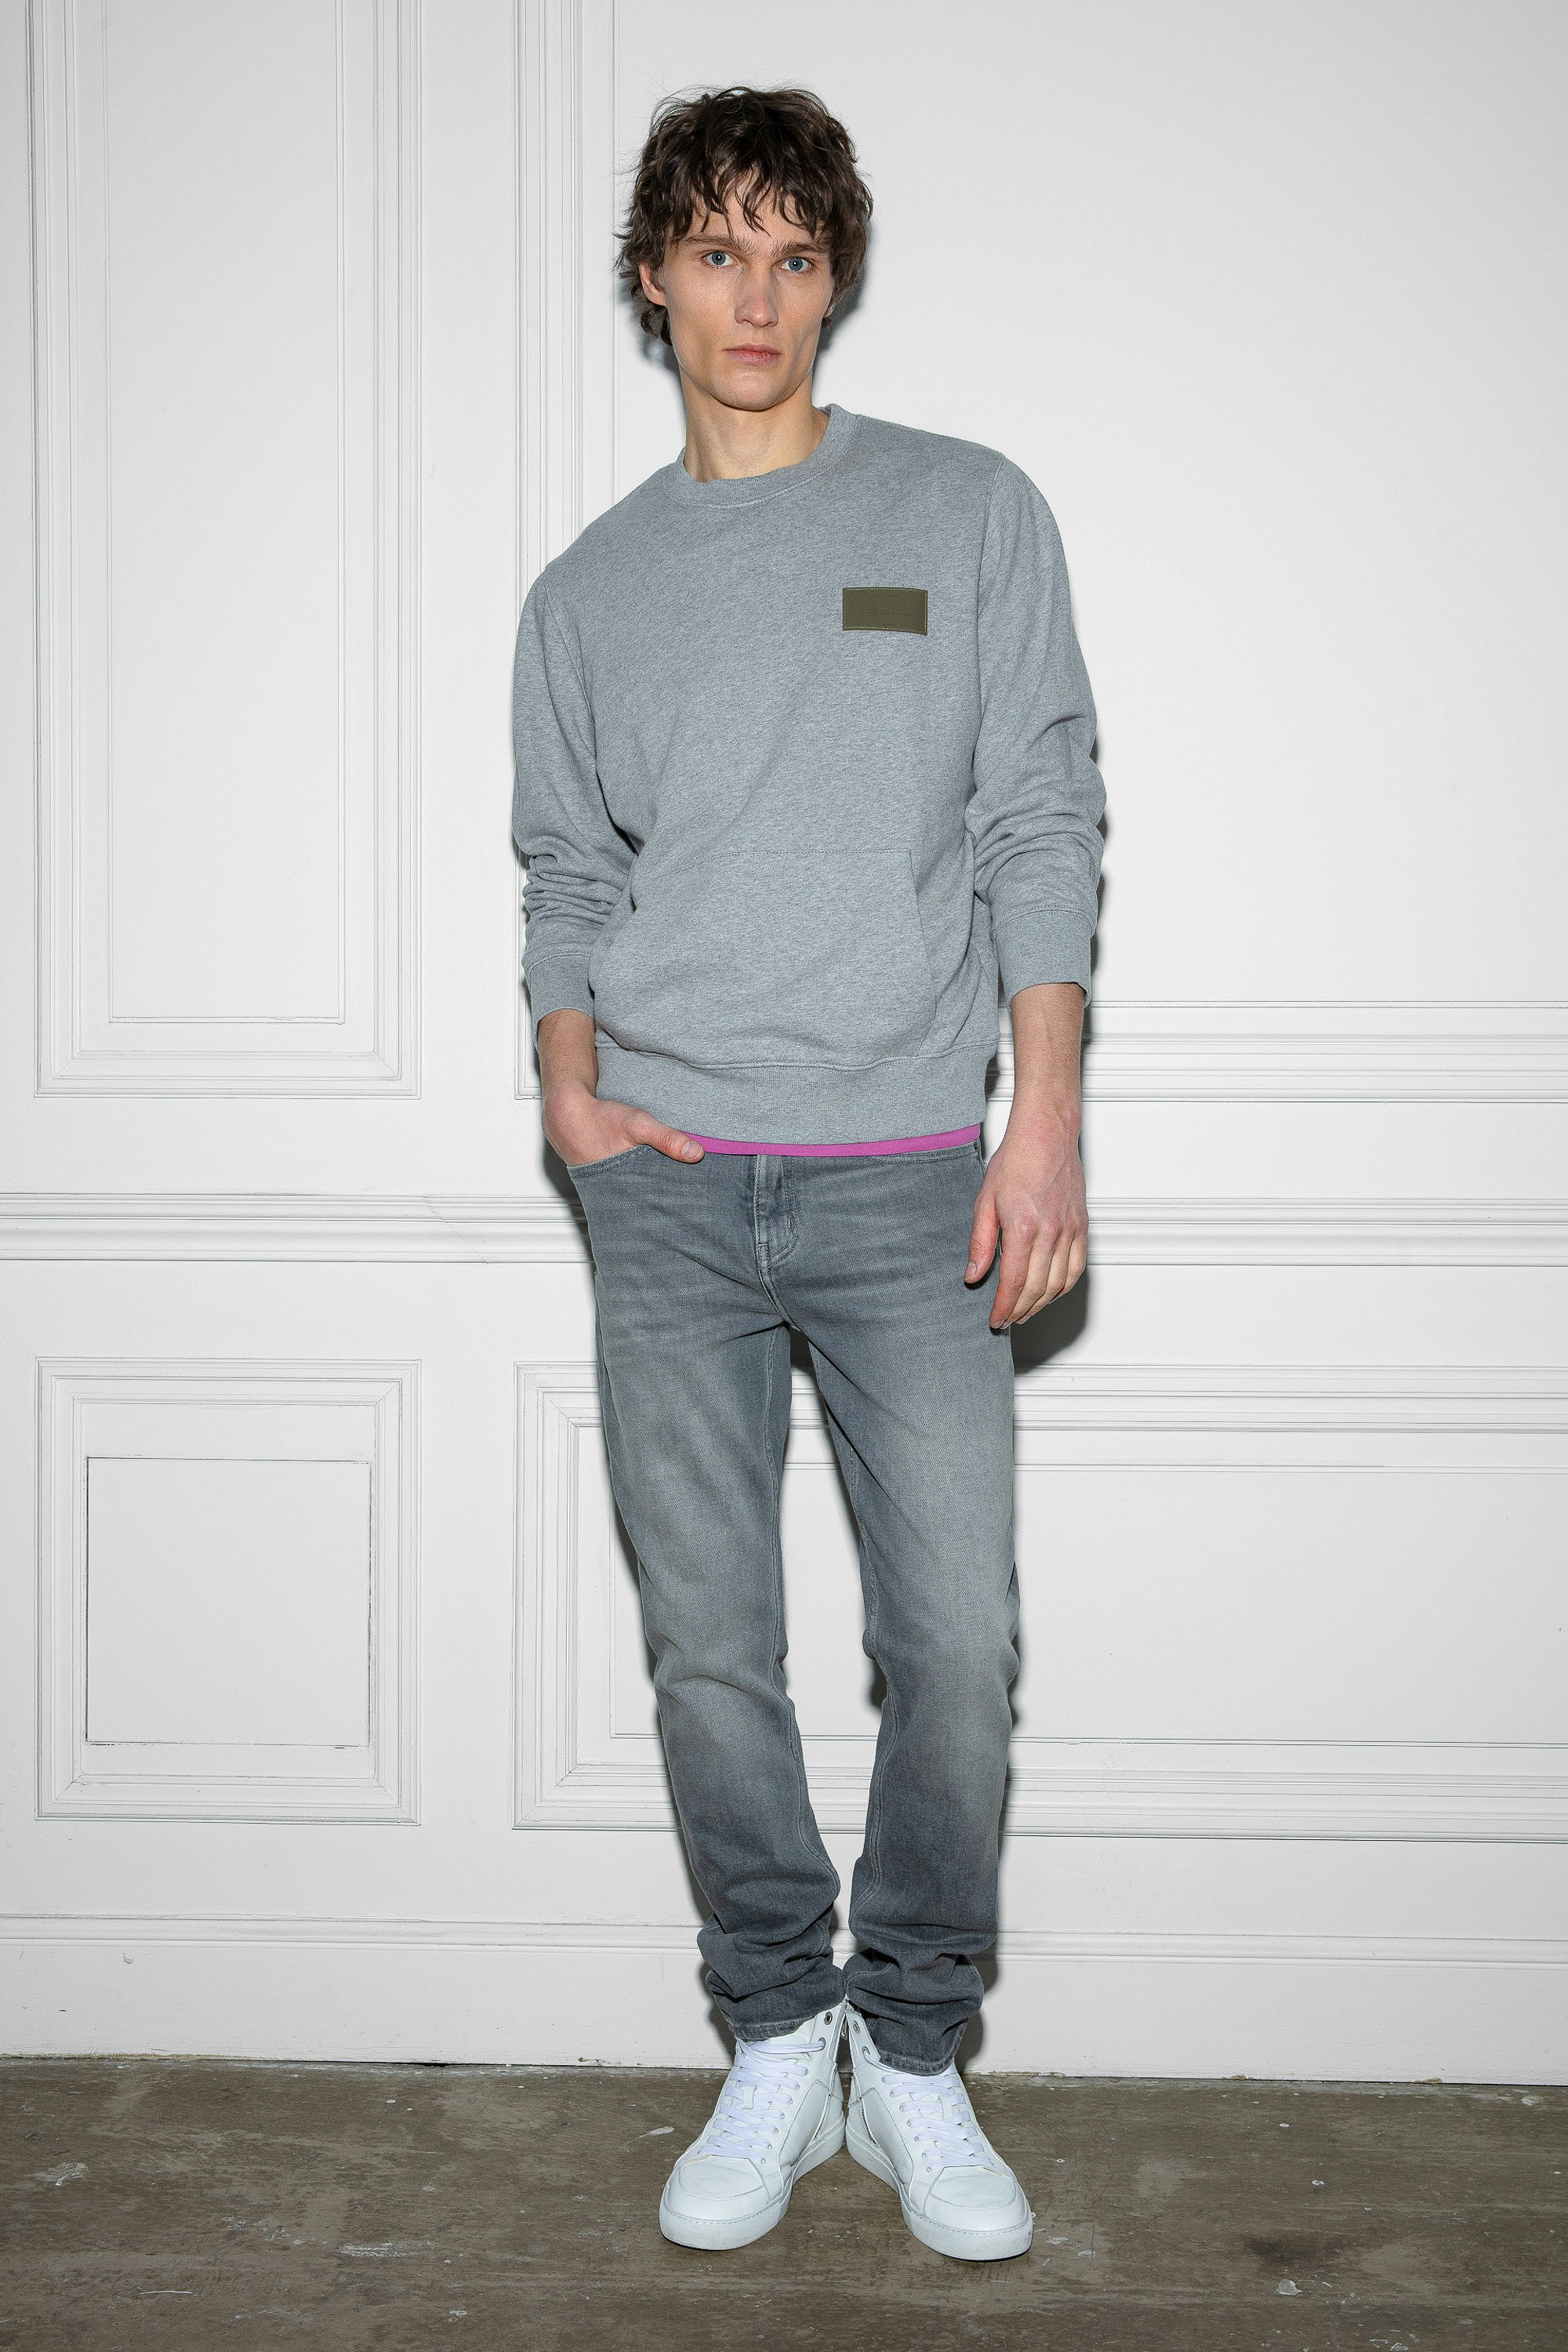 Sweatshirt Aime - Graumeliertes Sweatshirt mit Rundhalsausschnitt, langen Ärmeln und Patch in Brusthöhe.